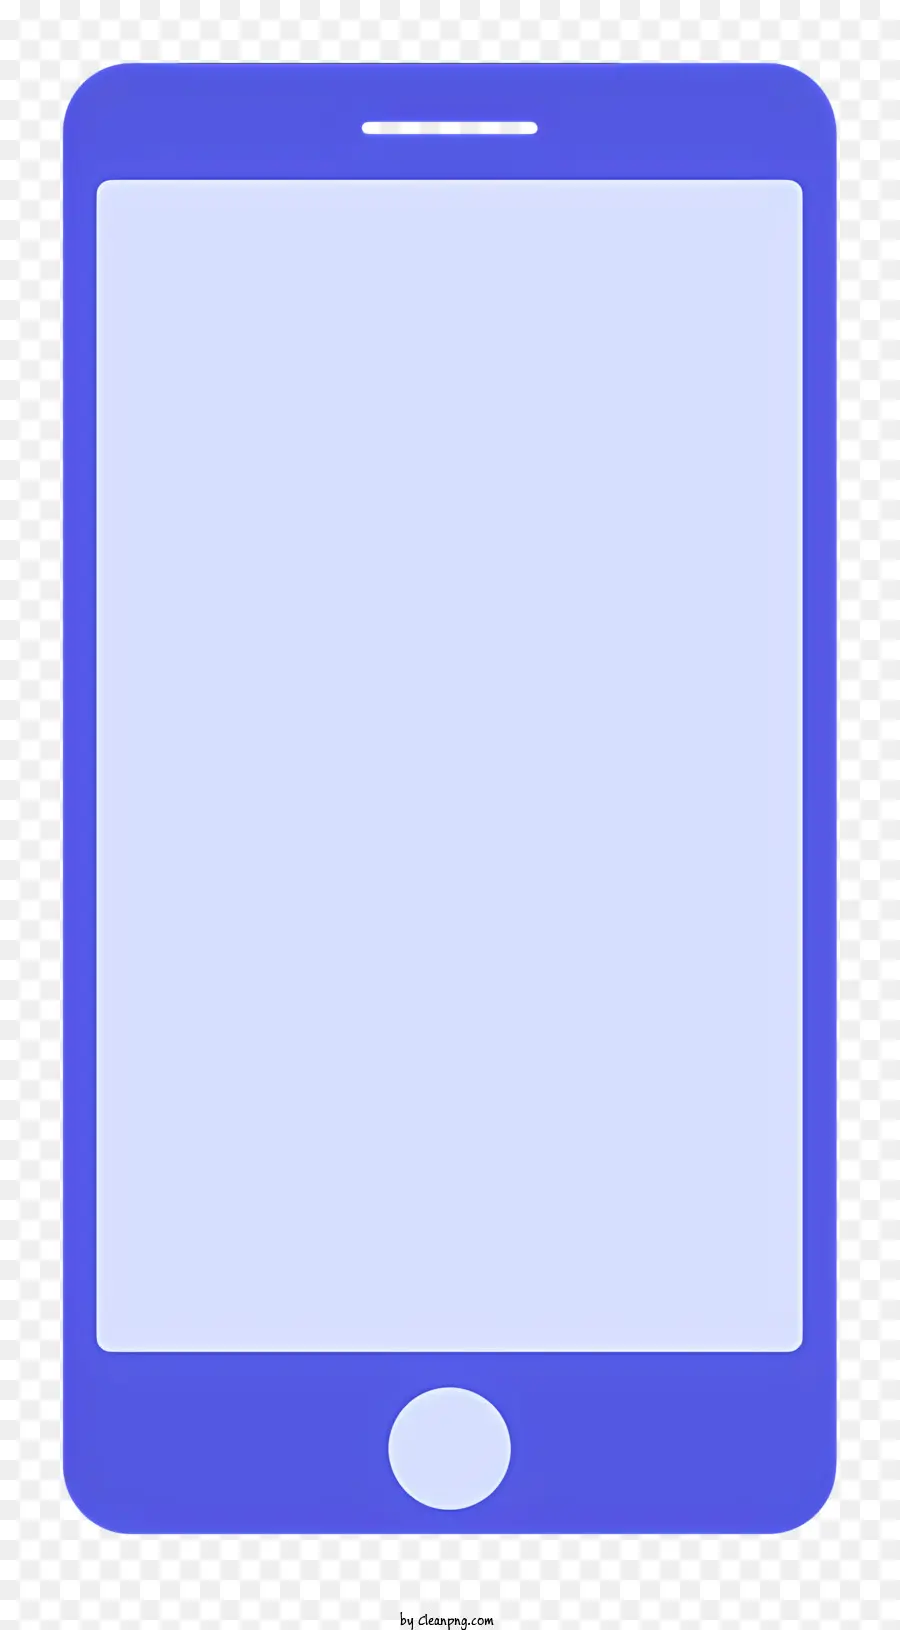 Blue Smartphone Blindbildschirm Flachbildschirm Rechteckige Form Rand um Bildschirm um den Bildschirm - Ein leeres blaues Smartphone mit sichtbaren Kanten